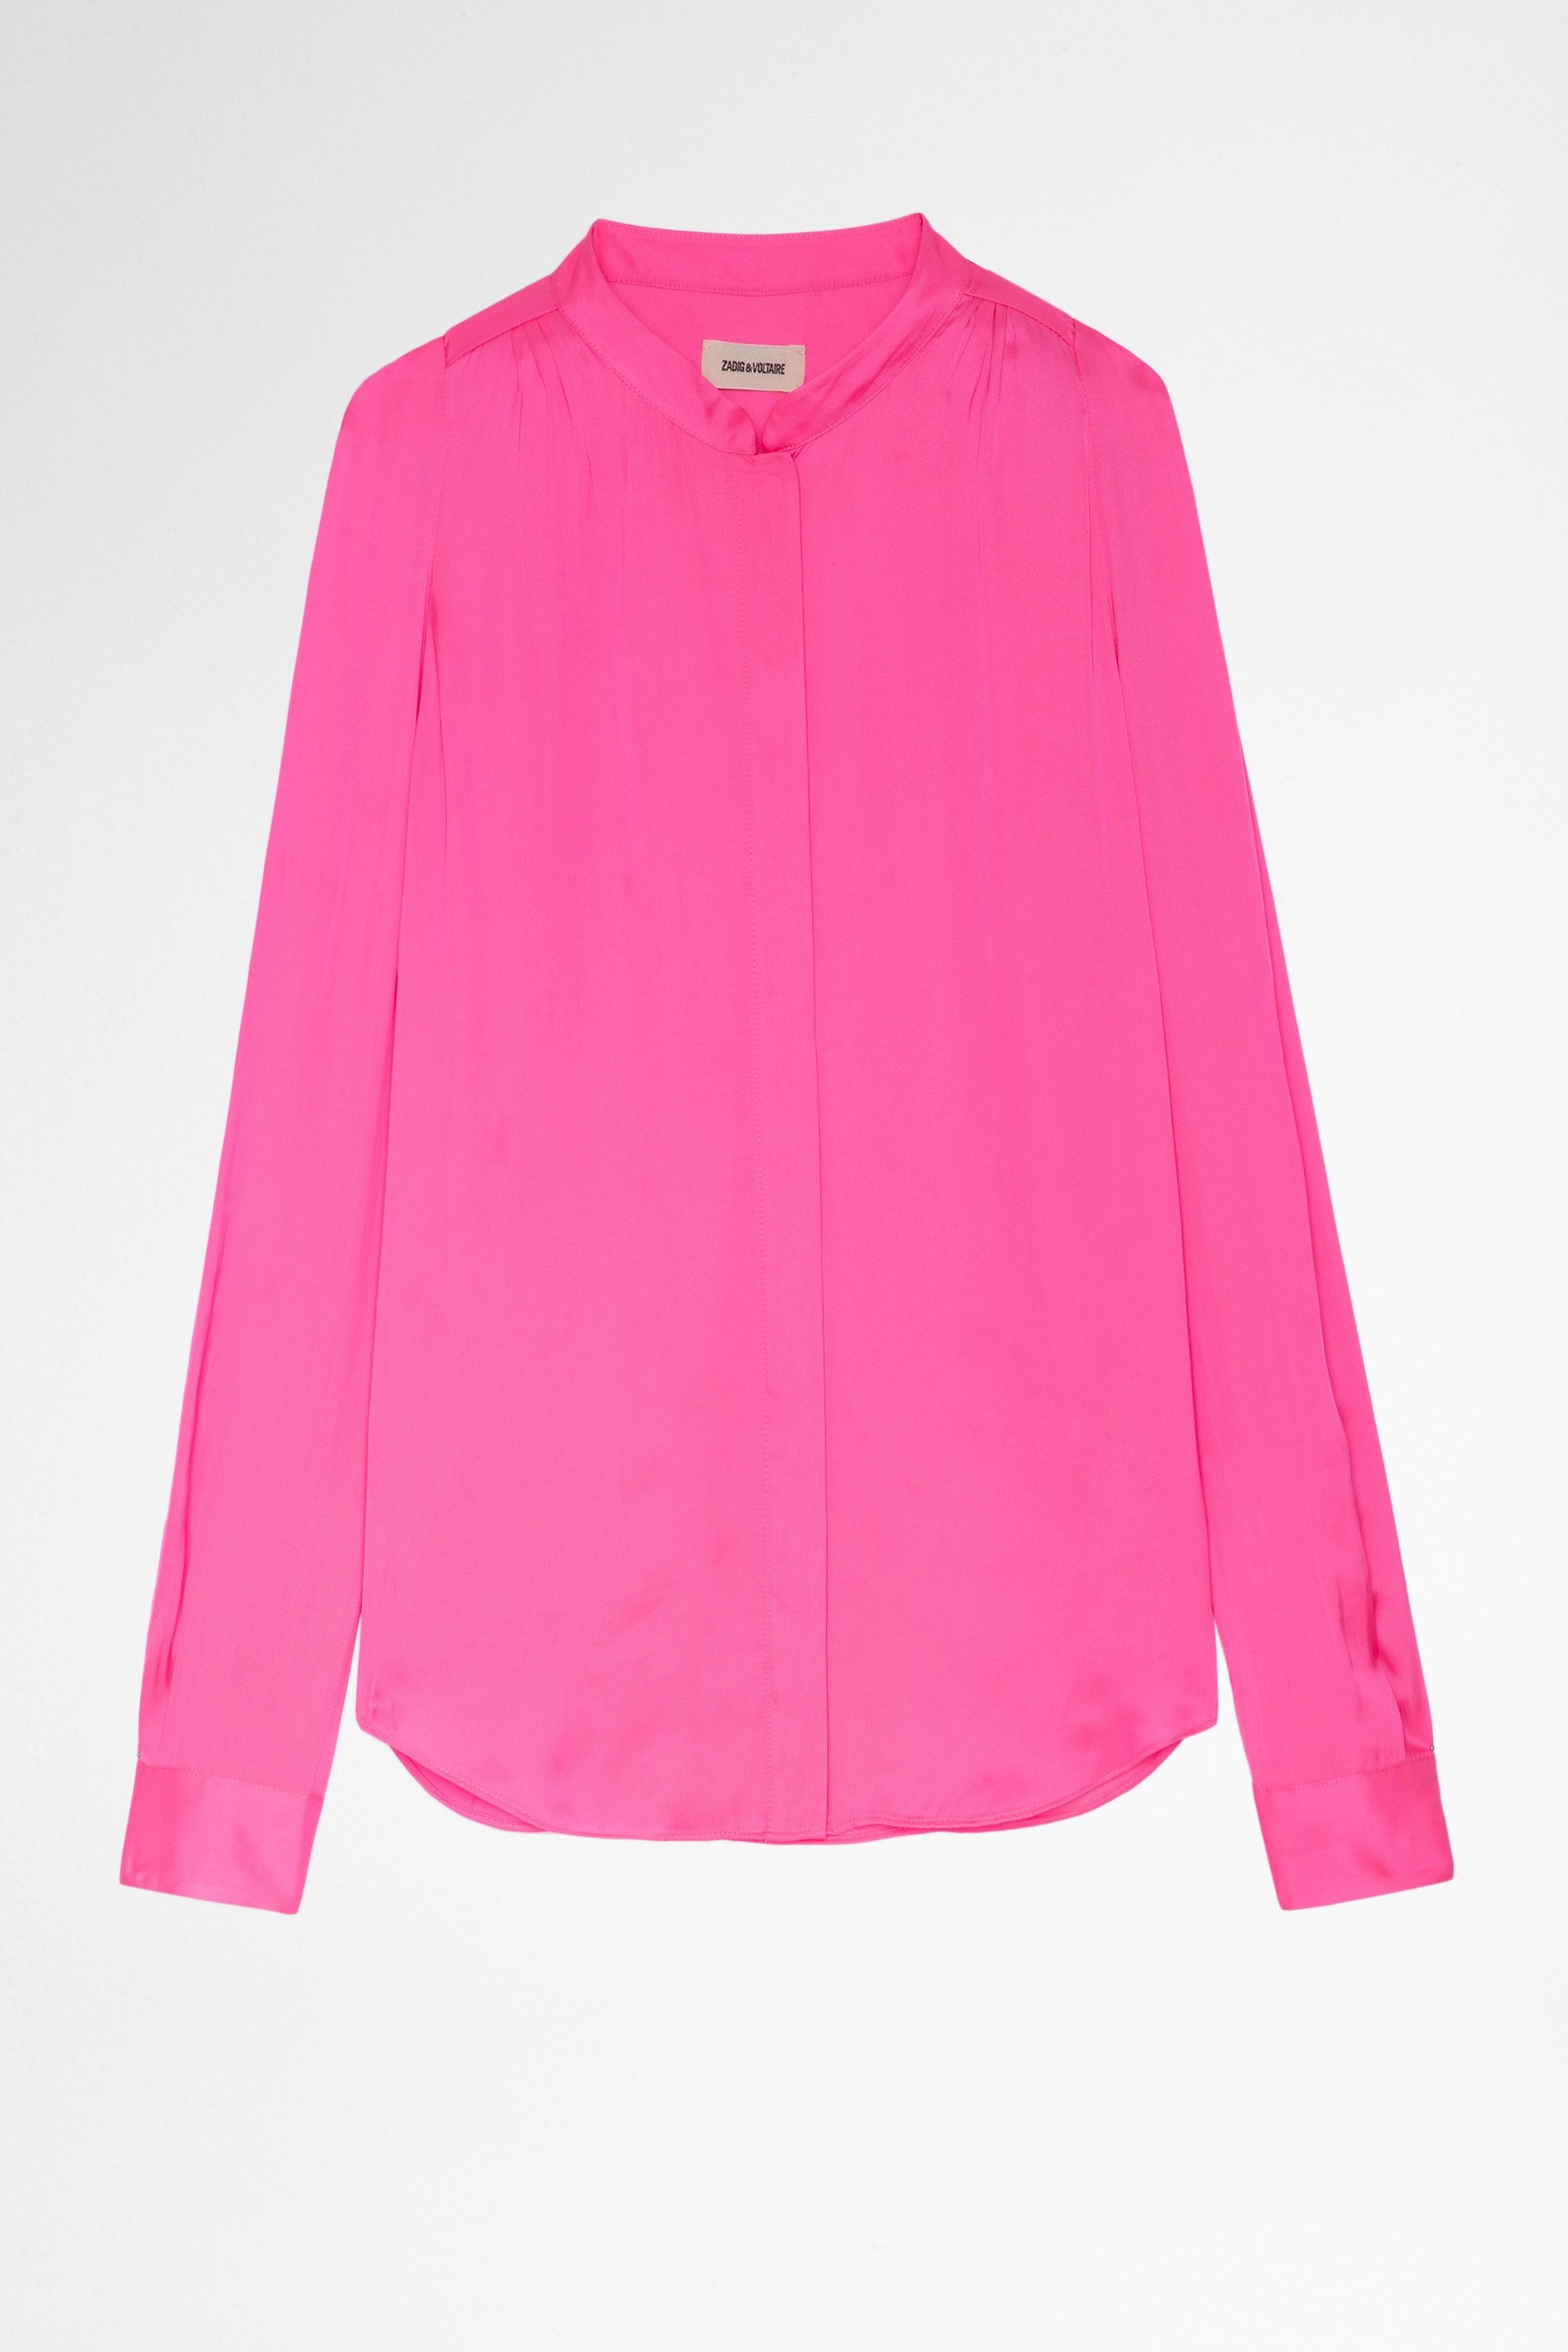 Touchy Shirt Women's long-sleeved pink satin shirt